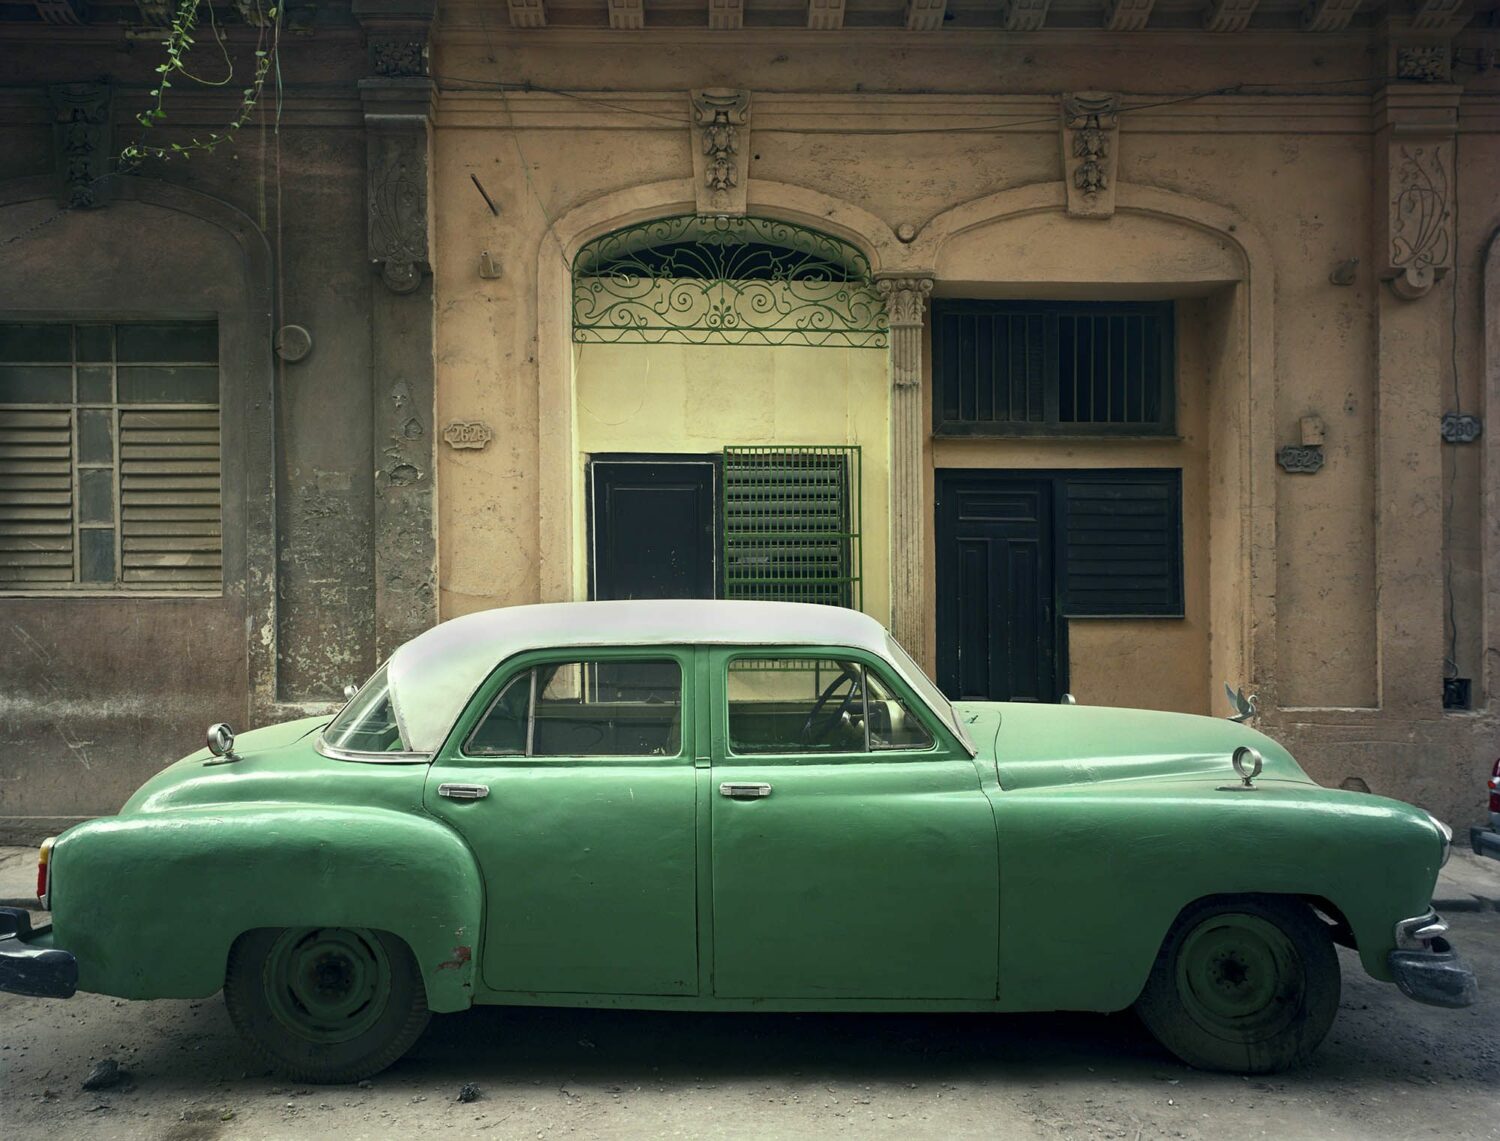 Robert Polidori: Green Car